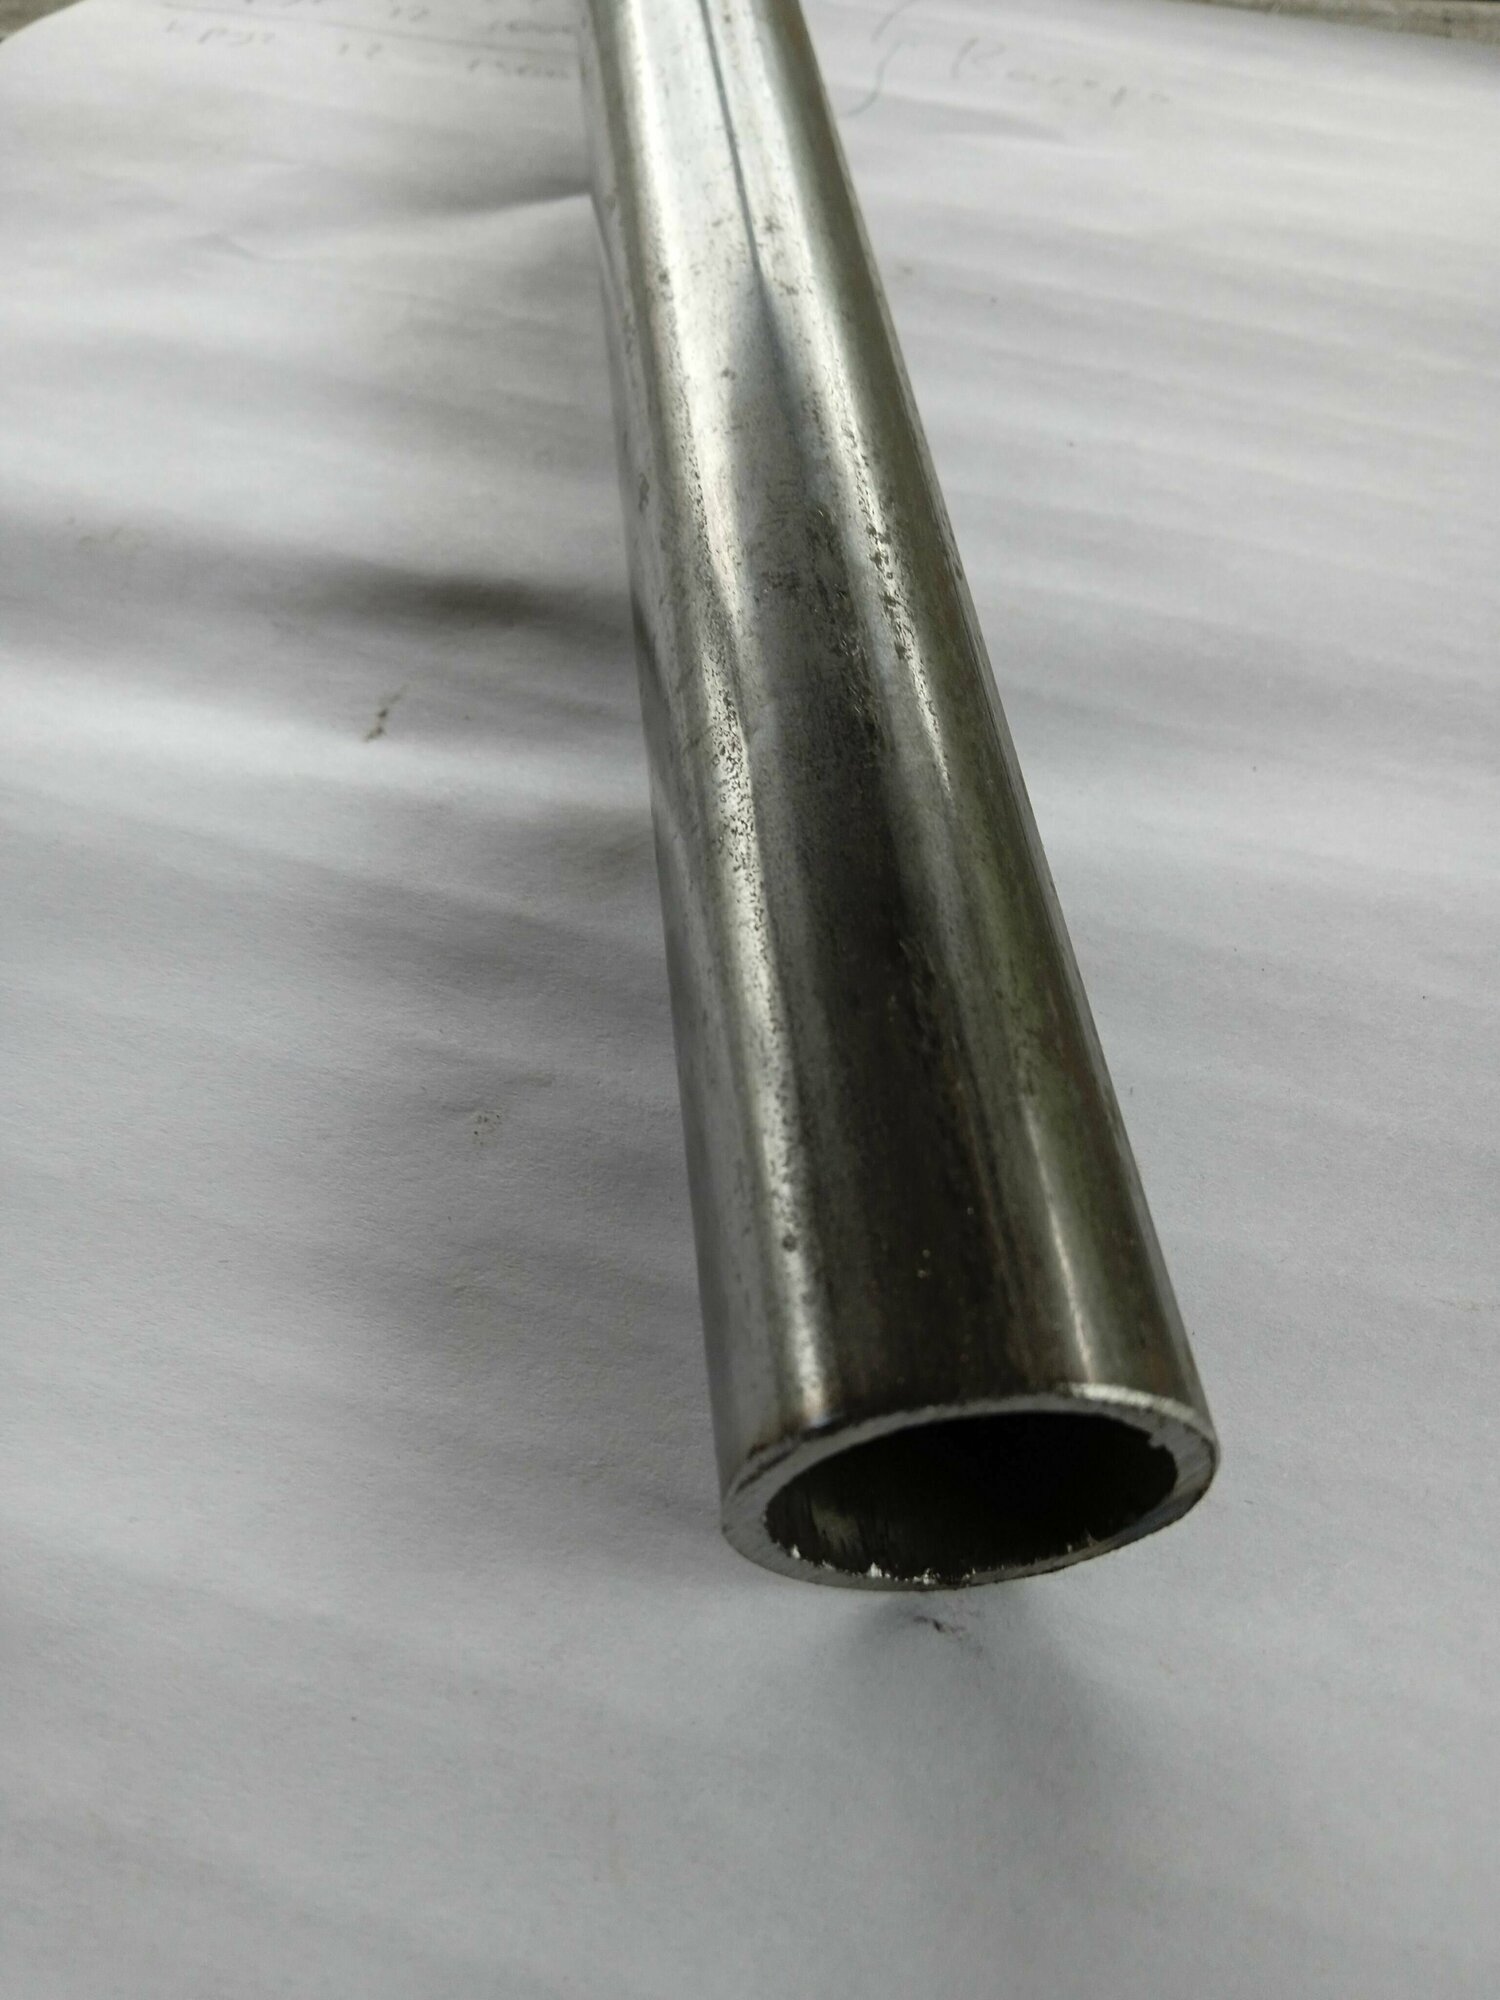 Труба 20х2,8 (26,8) стальная. Водогазопроводная (ВГП 20) ГОСТ 3262-75. Толщина стенки 2,8 мм. Длина 1000 мм.